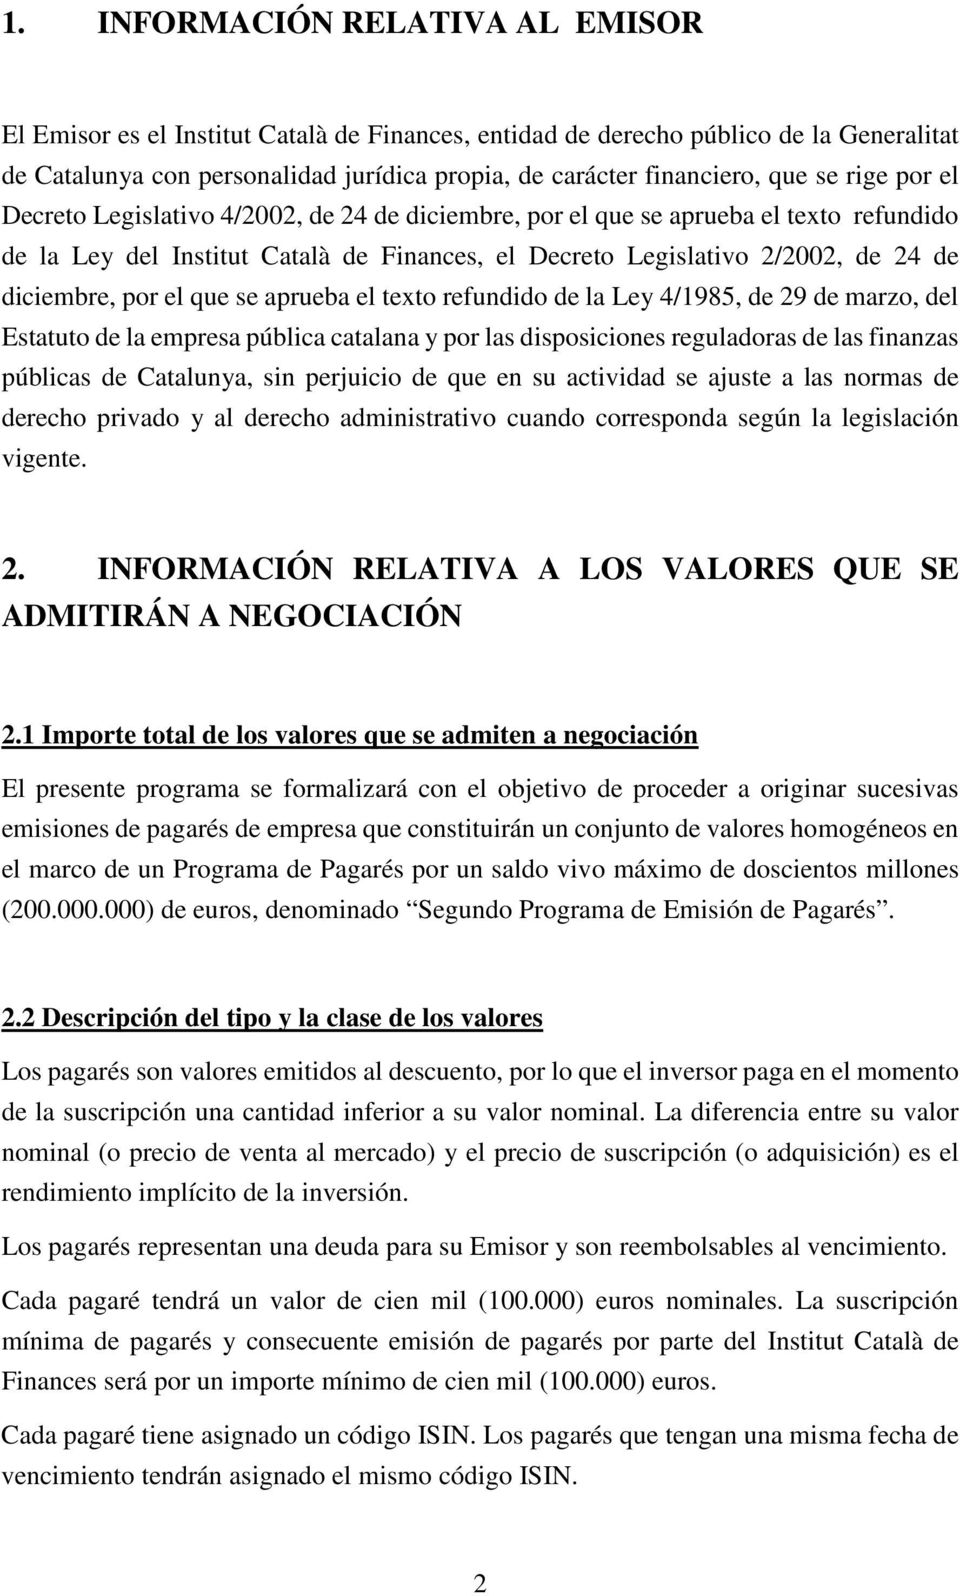 por el que se aprueba el texto refundido de la Ley 4/1985, de 29 de marzo, del Estatuto de la empresa pública catalana y por las disposiciones reguladoras de las finanzas públicas de Catalunya, sin